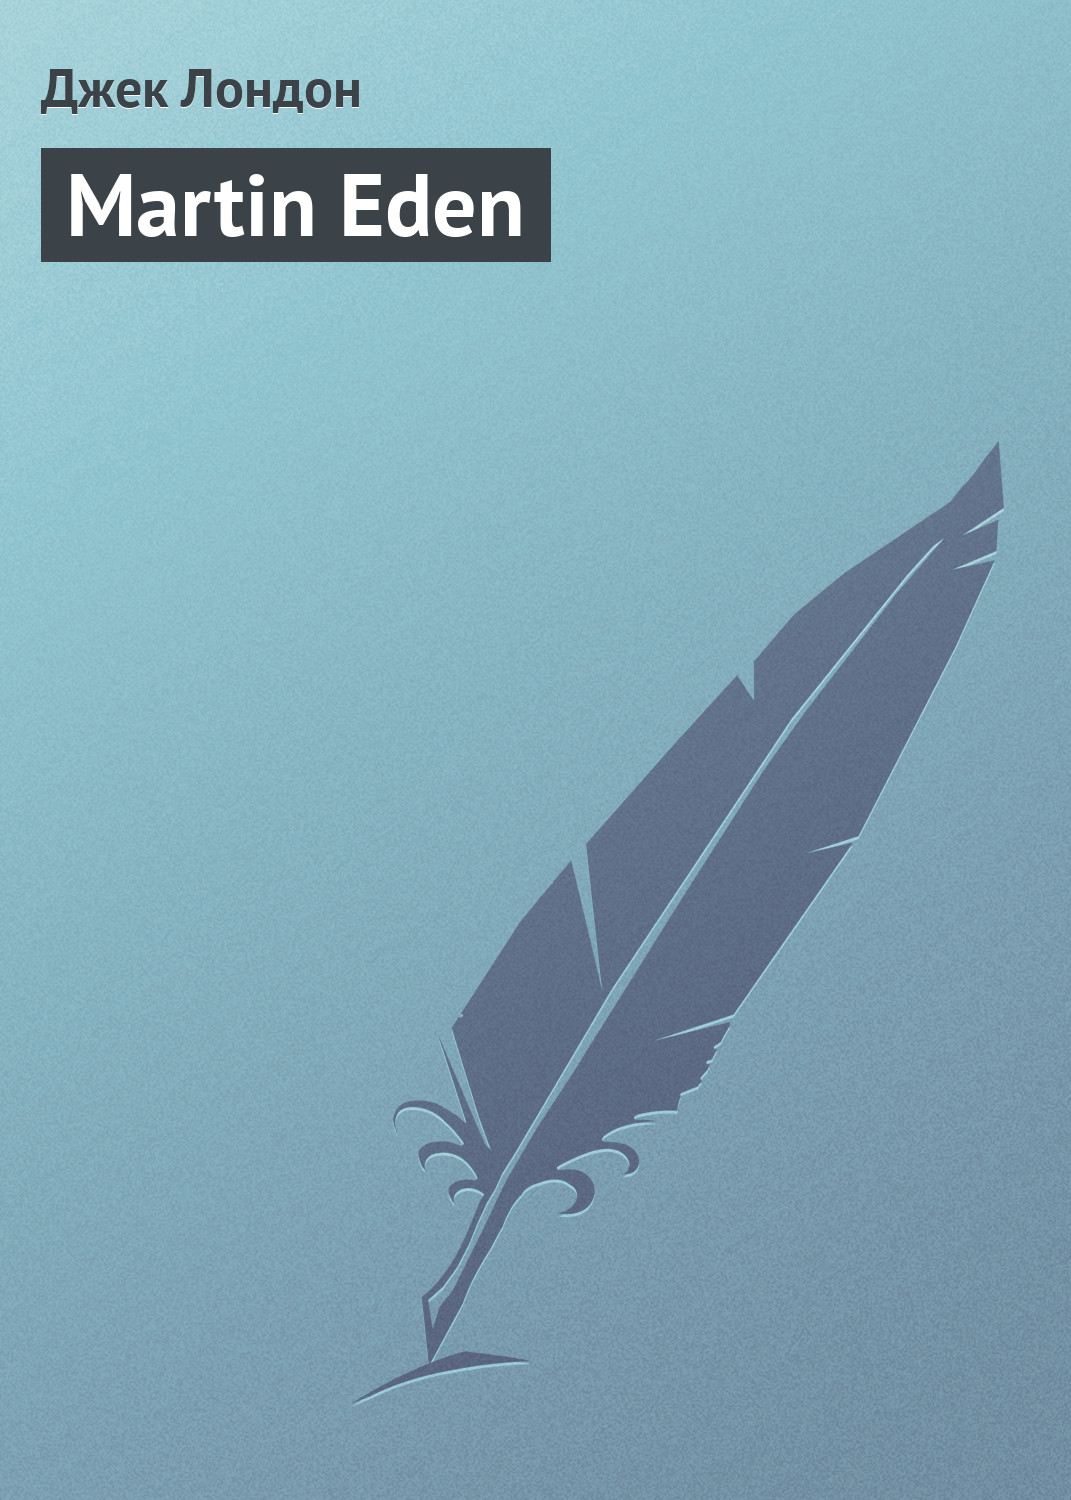 Книга Martin Eden из серии , созданная Джек Лондон, может относится к жанру Литература 20 века, Зарубежная классика. Стоимость электронной книги Martin Eden с идентификатором 146075 составляет 29.95 руб.